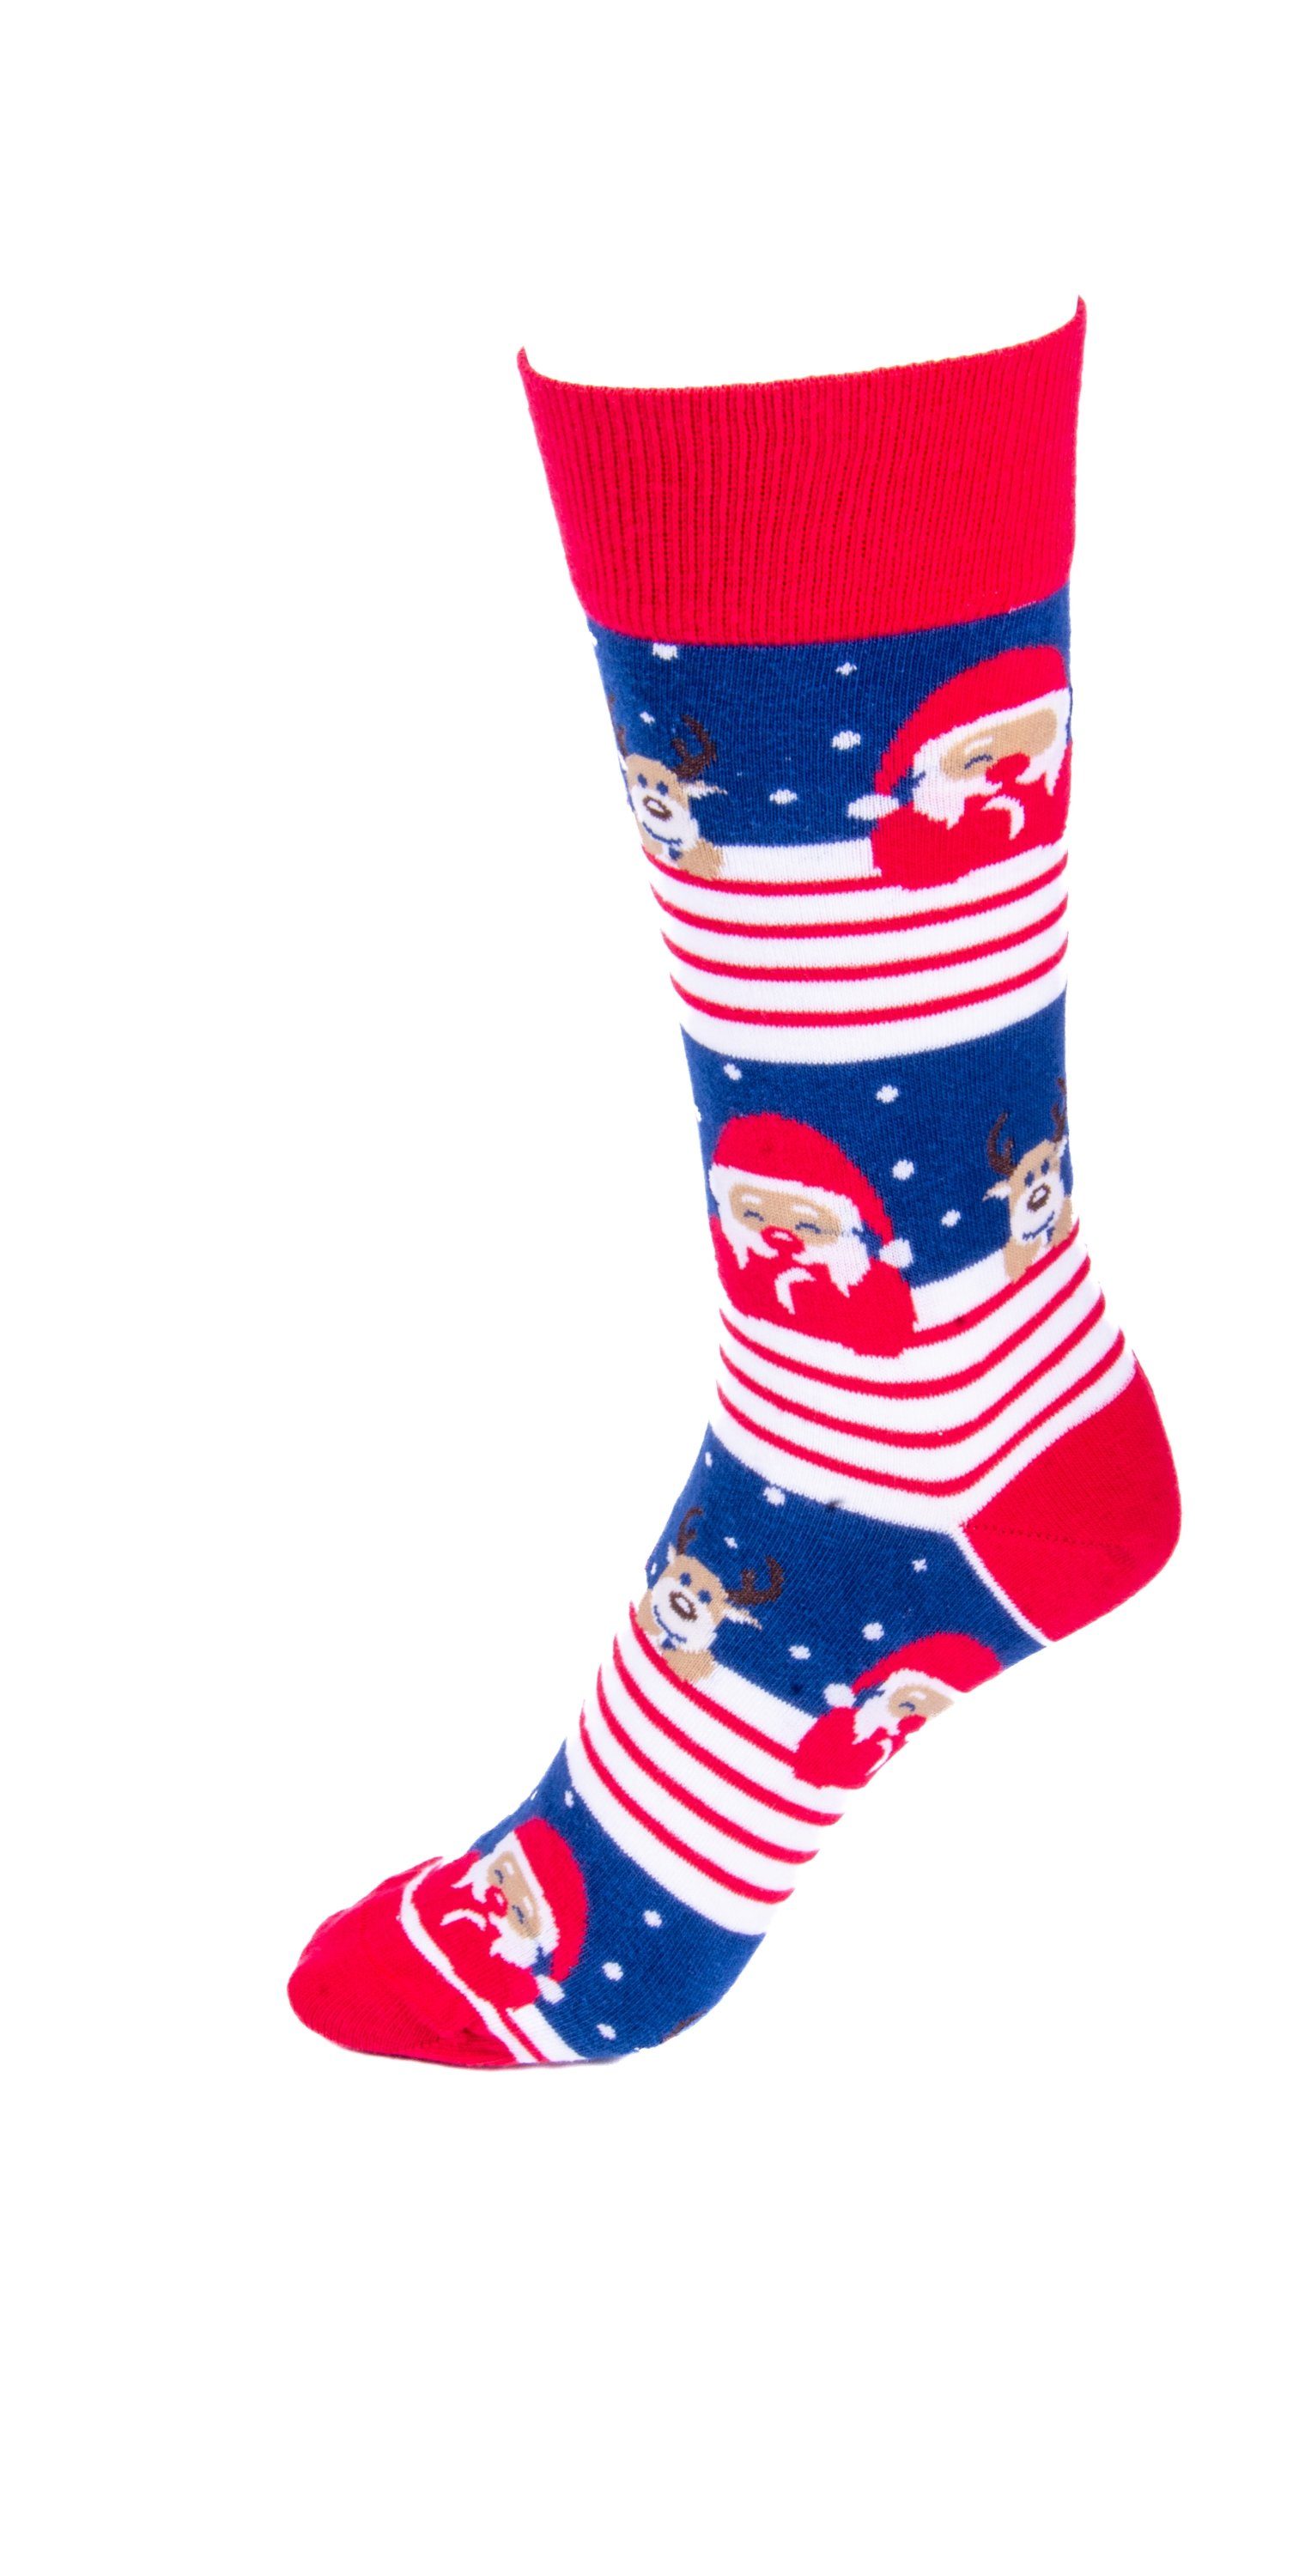 Merci Socken mit süßem Weihnachtsmotiv 3er Pack